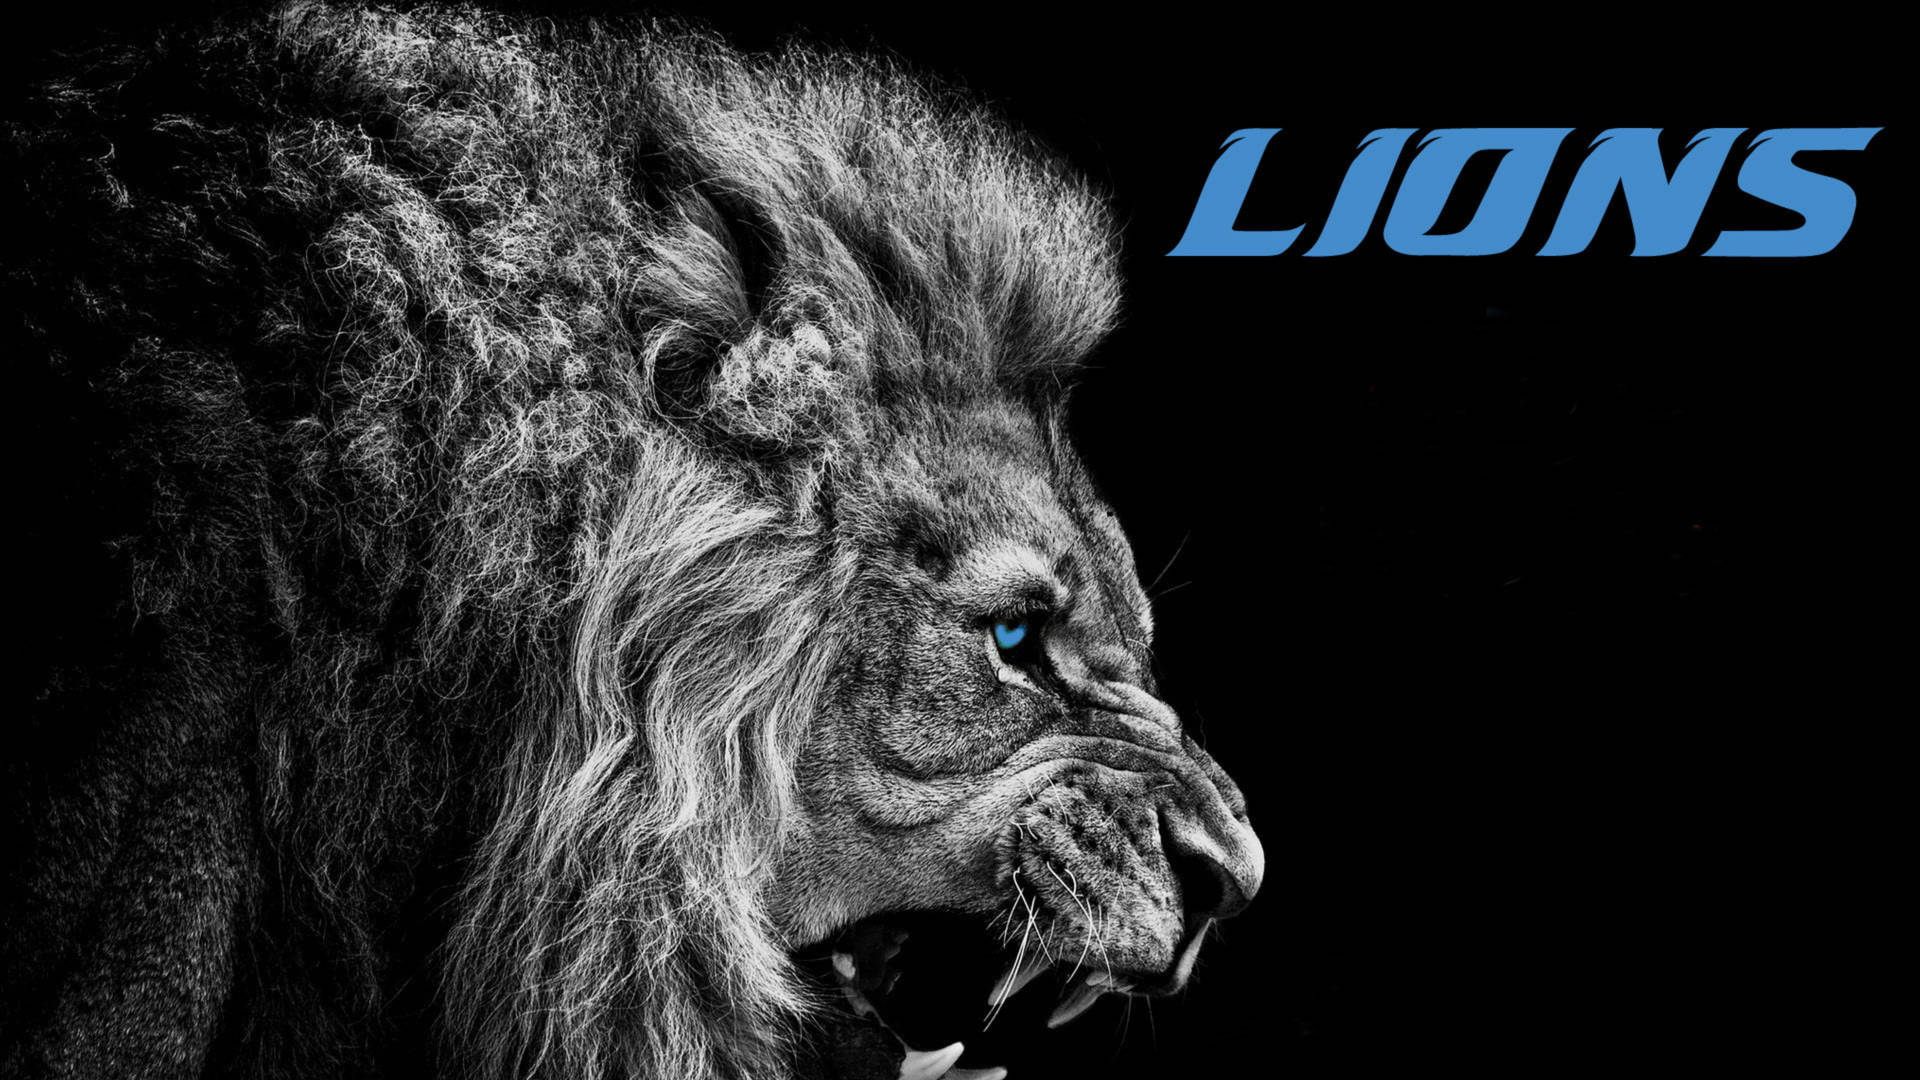 Detroit Lions Lion’s Head Wallpaper